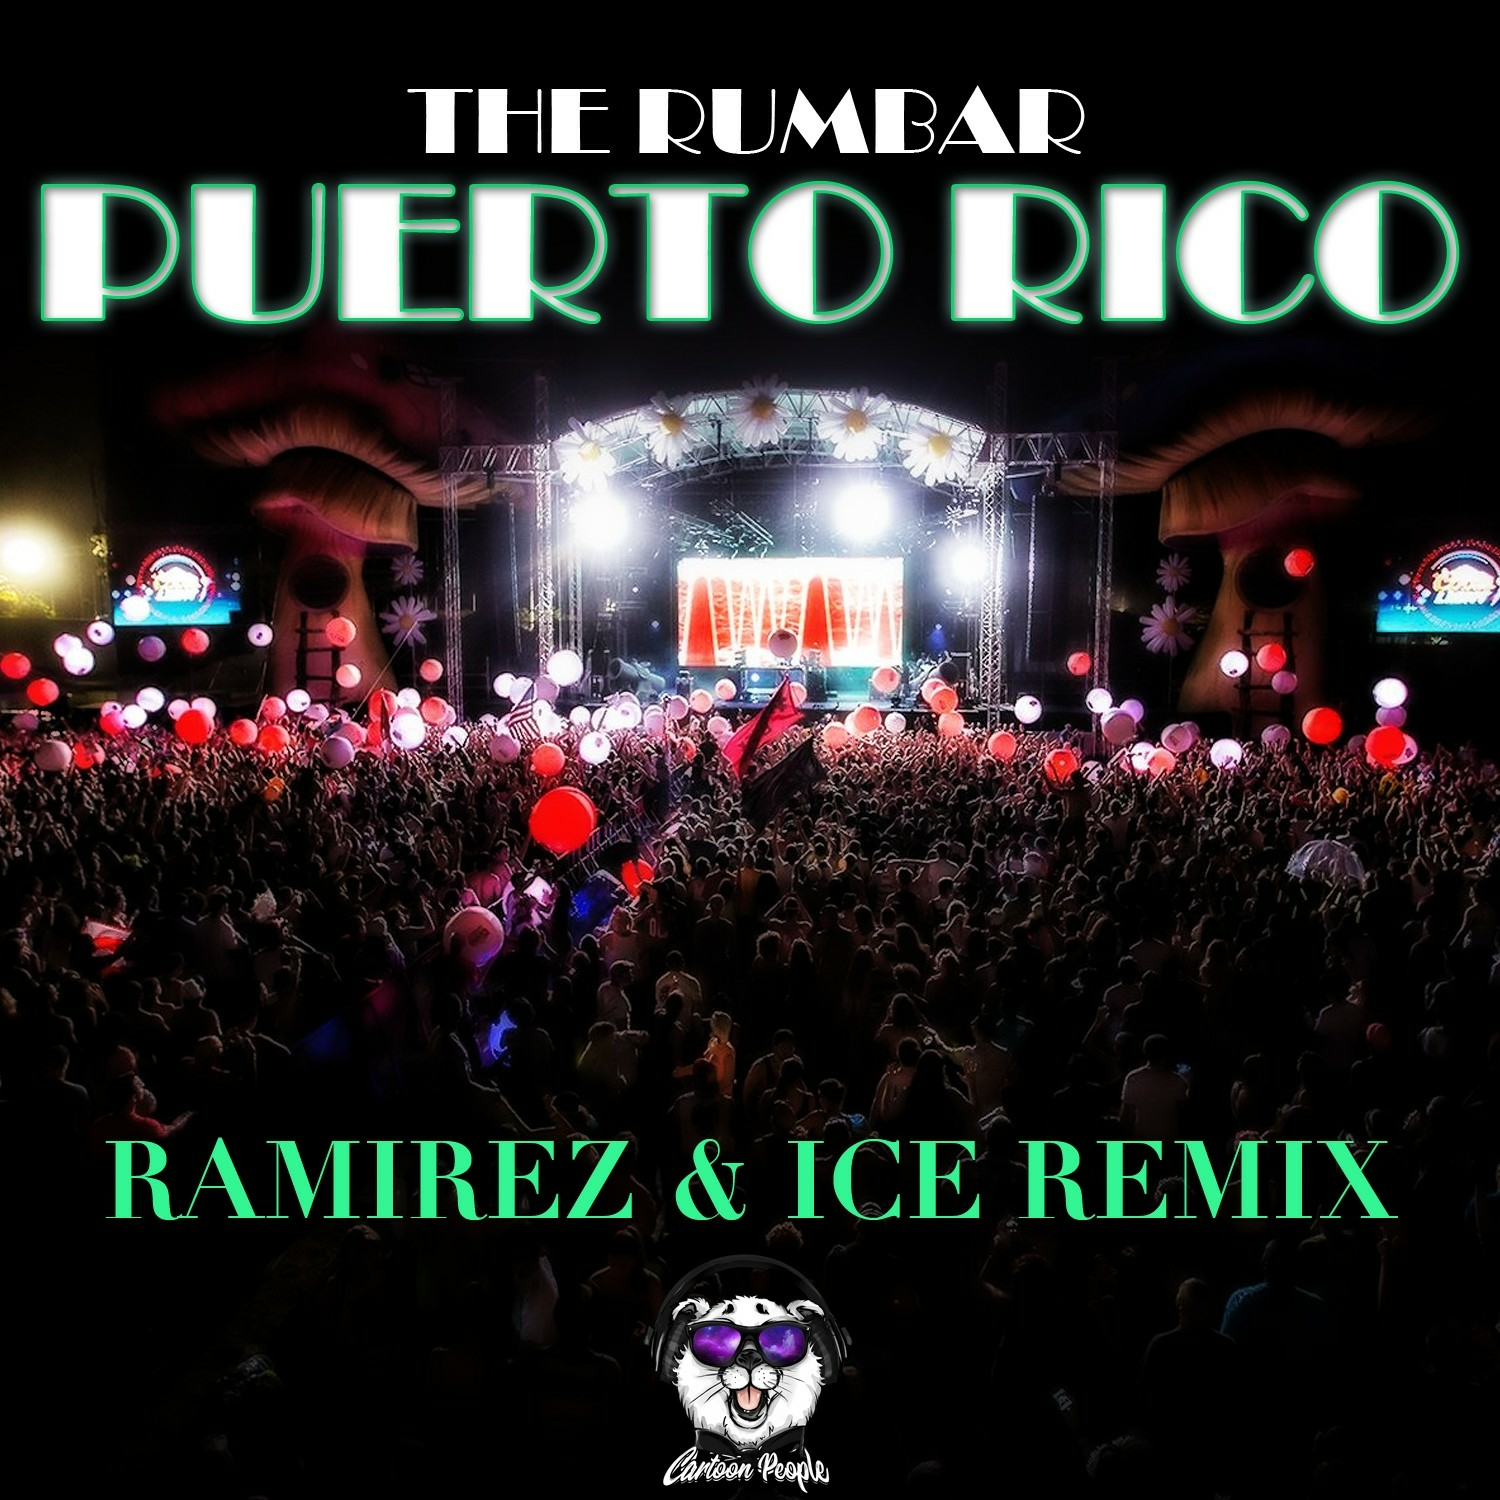 Песню айс ремикс. Rumbar. The Rumbar - PUERTORICO (the Rumbar Classic Mix).